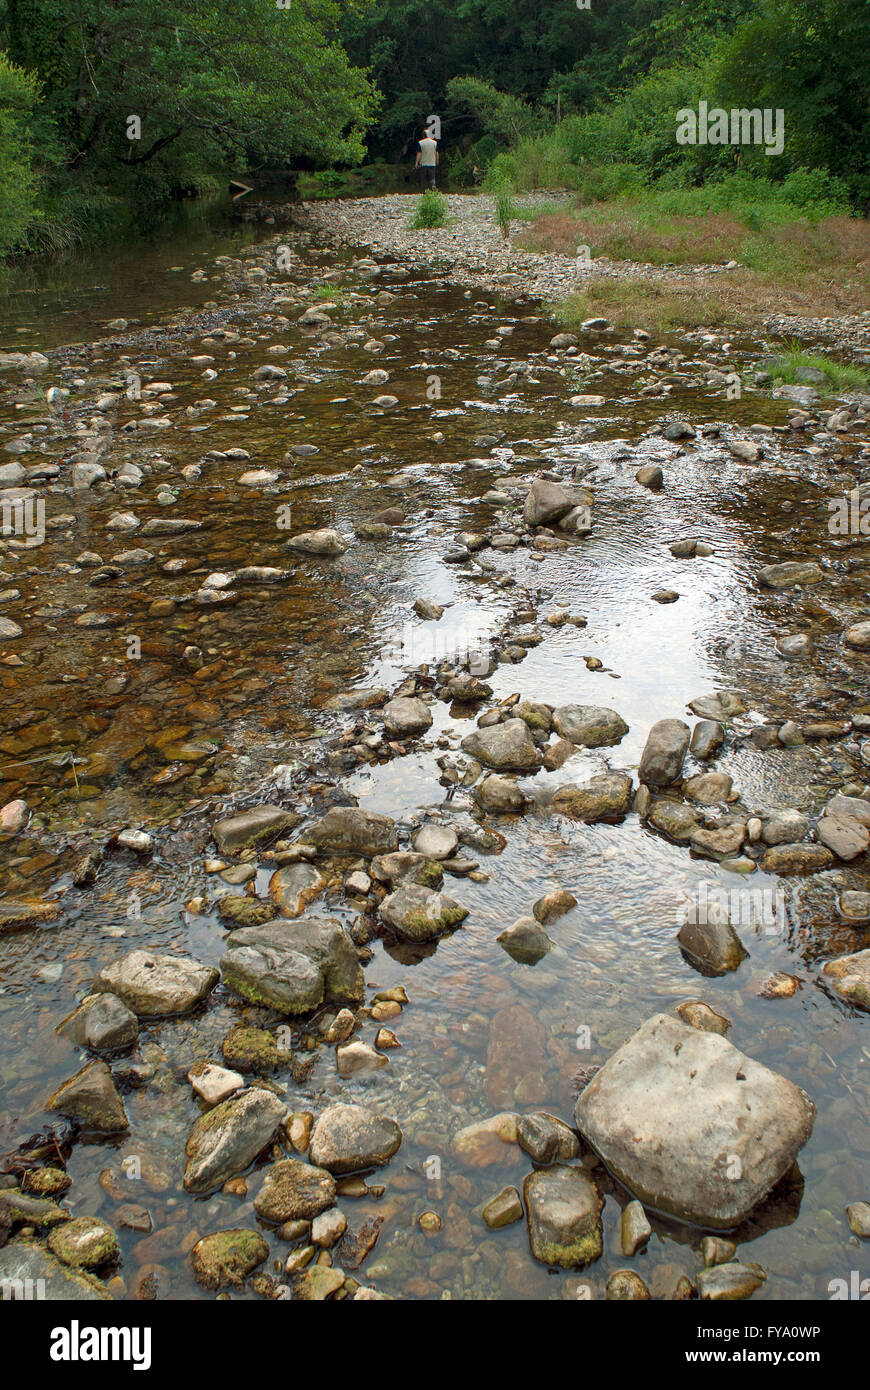 Mignone river, Monterano Regional Nature Reserve, Canale Monterano, Lazio, Italy Stock Photo